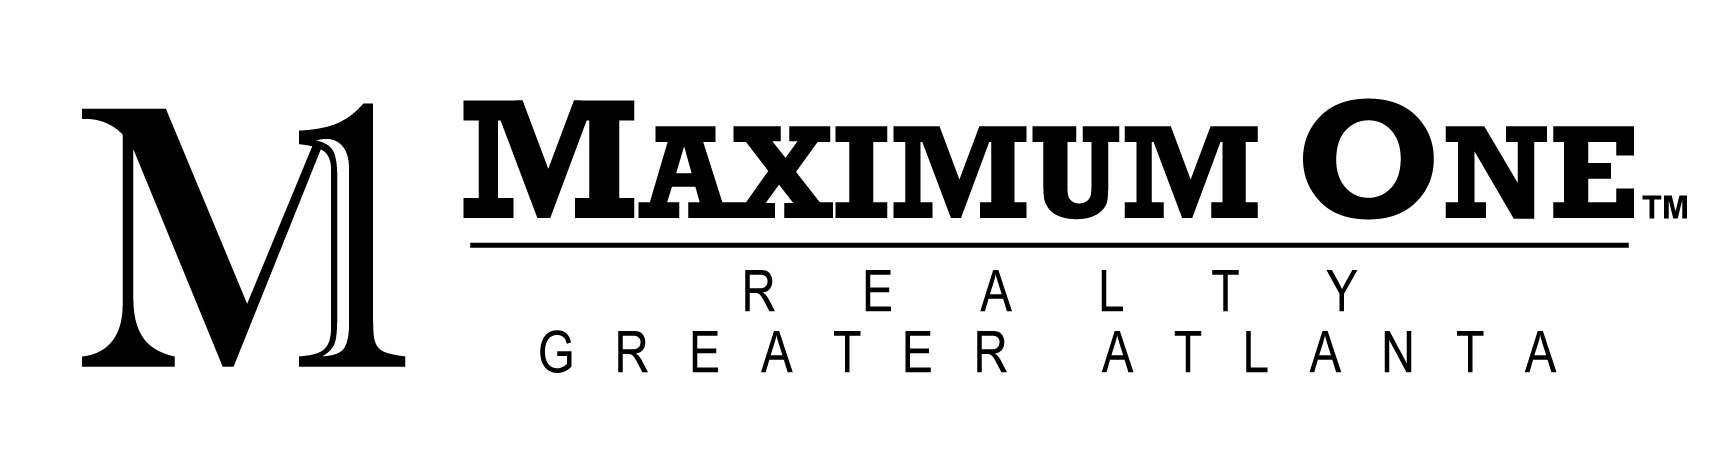 Maximum One Greater Atlanta Realtors